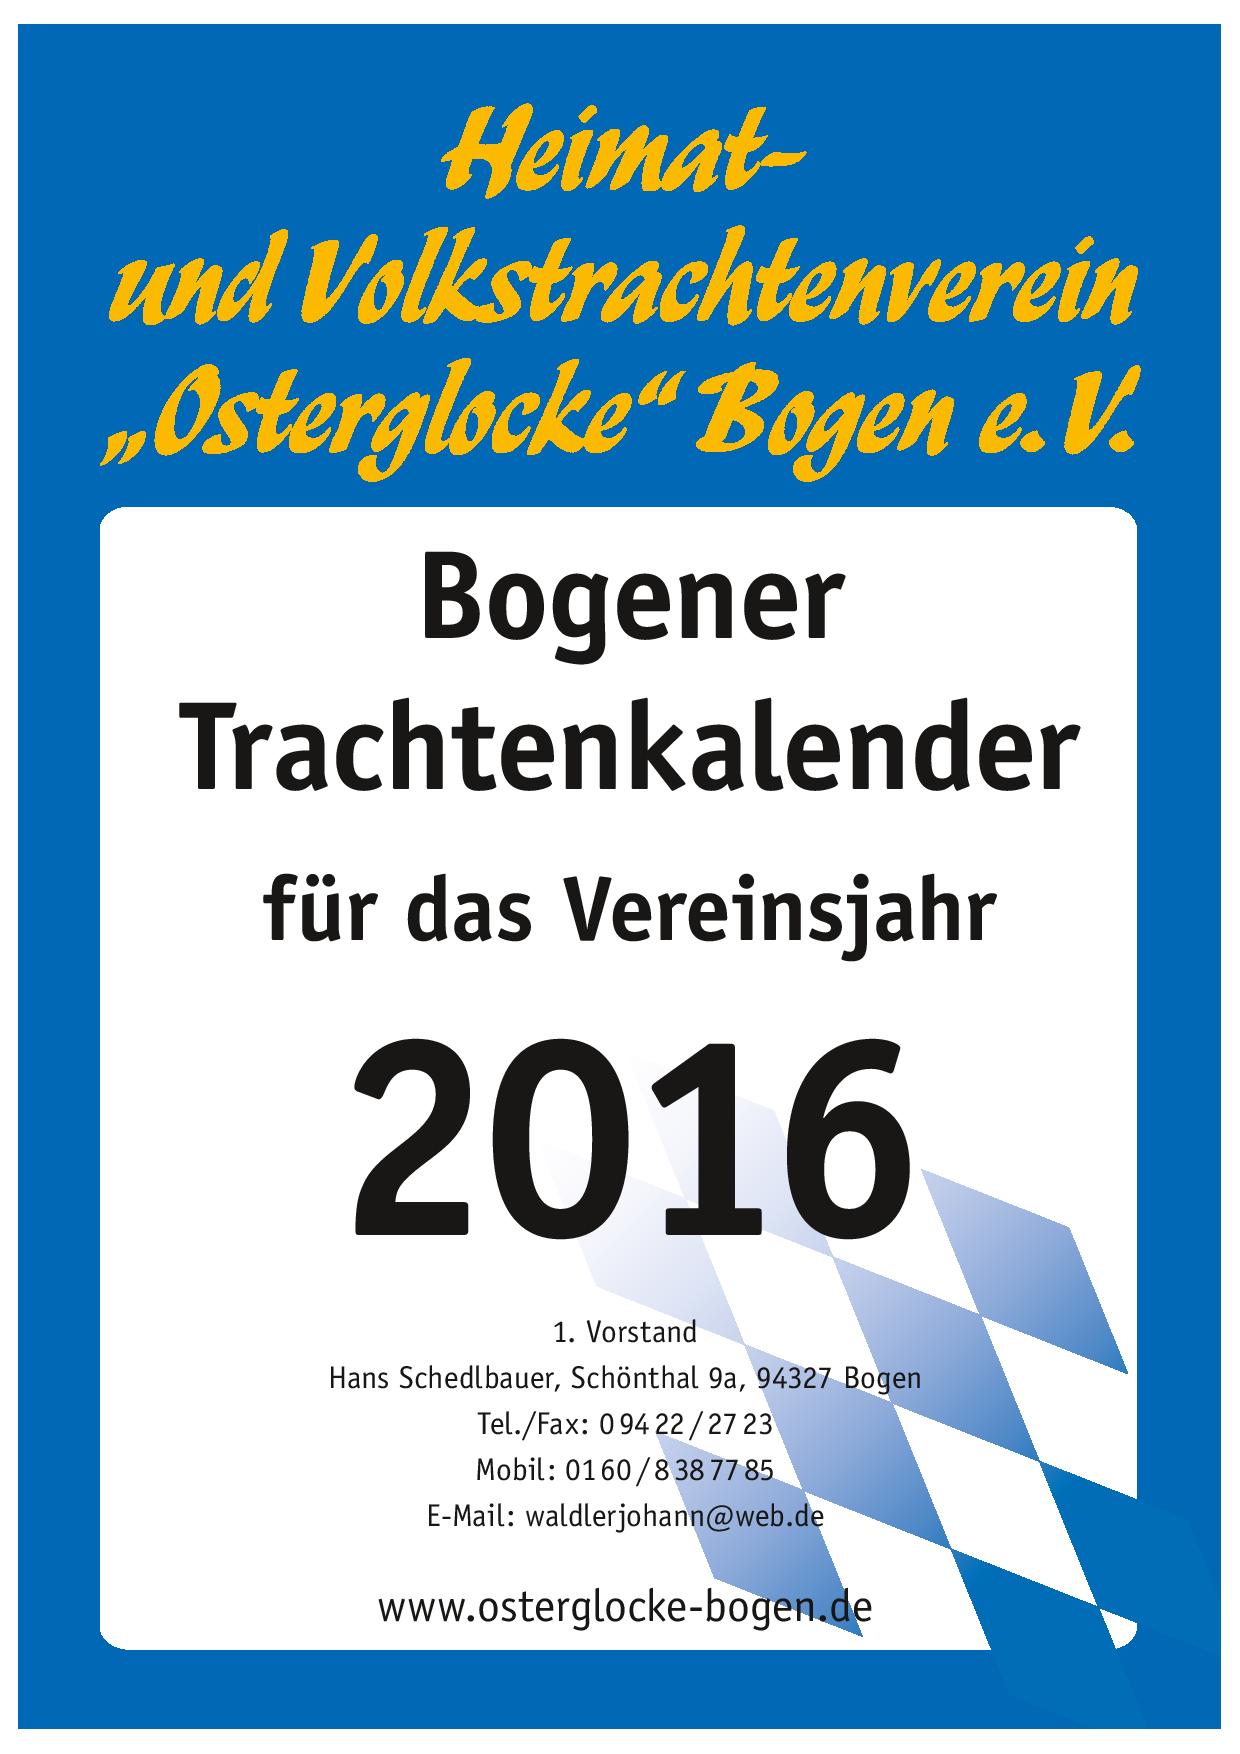 Bogener Trachtenkalender 2016 (Deckblatt)